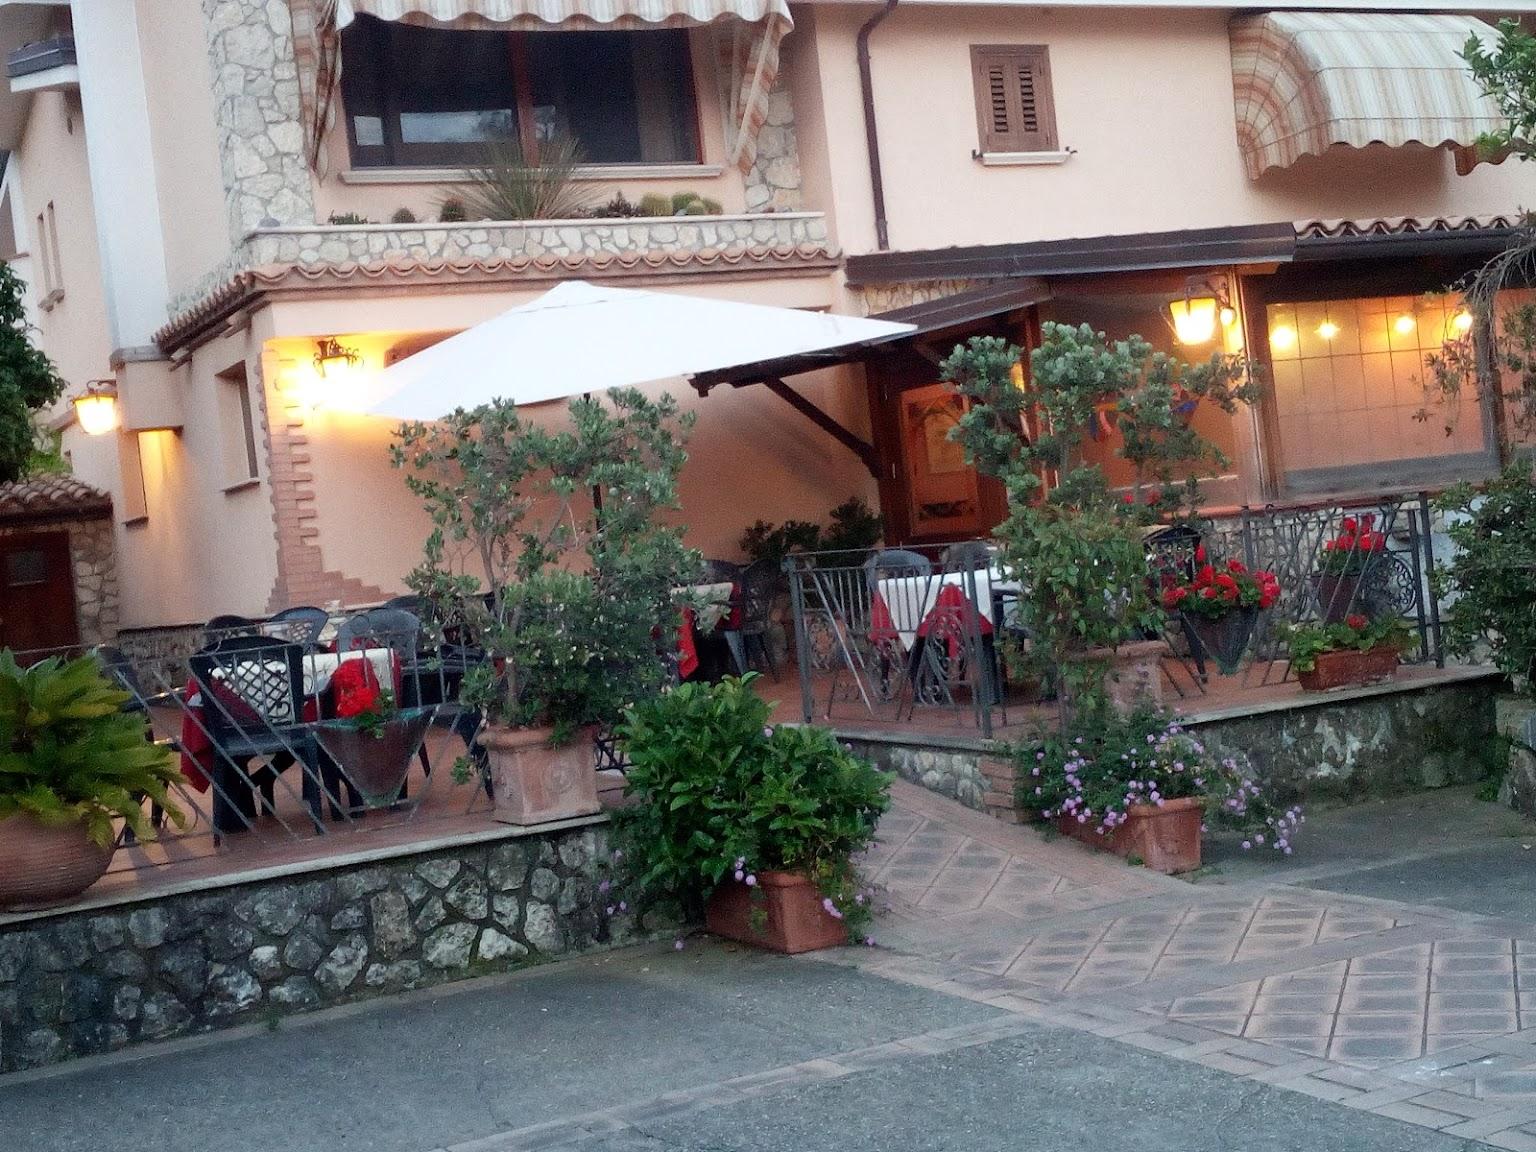 La Vecchia Quercia Torremezzo – Restaurant in Calabria, 64 reviews and ...